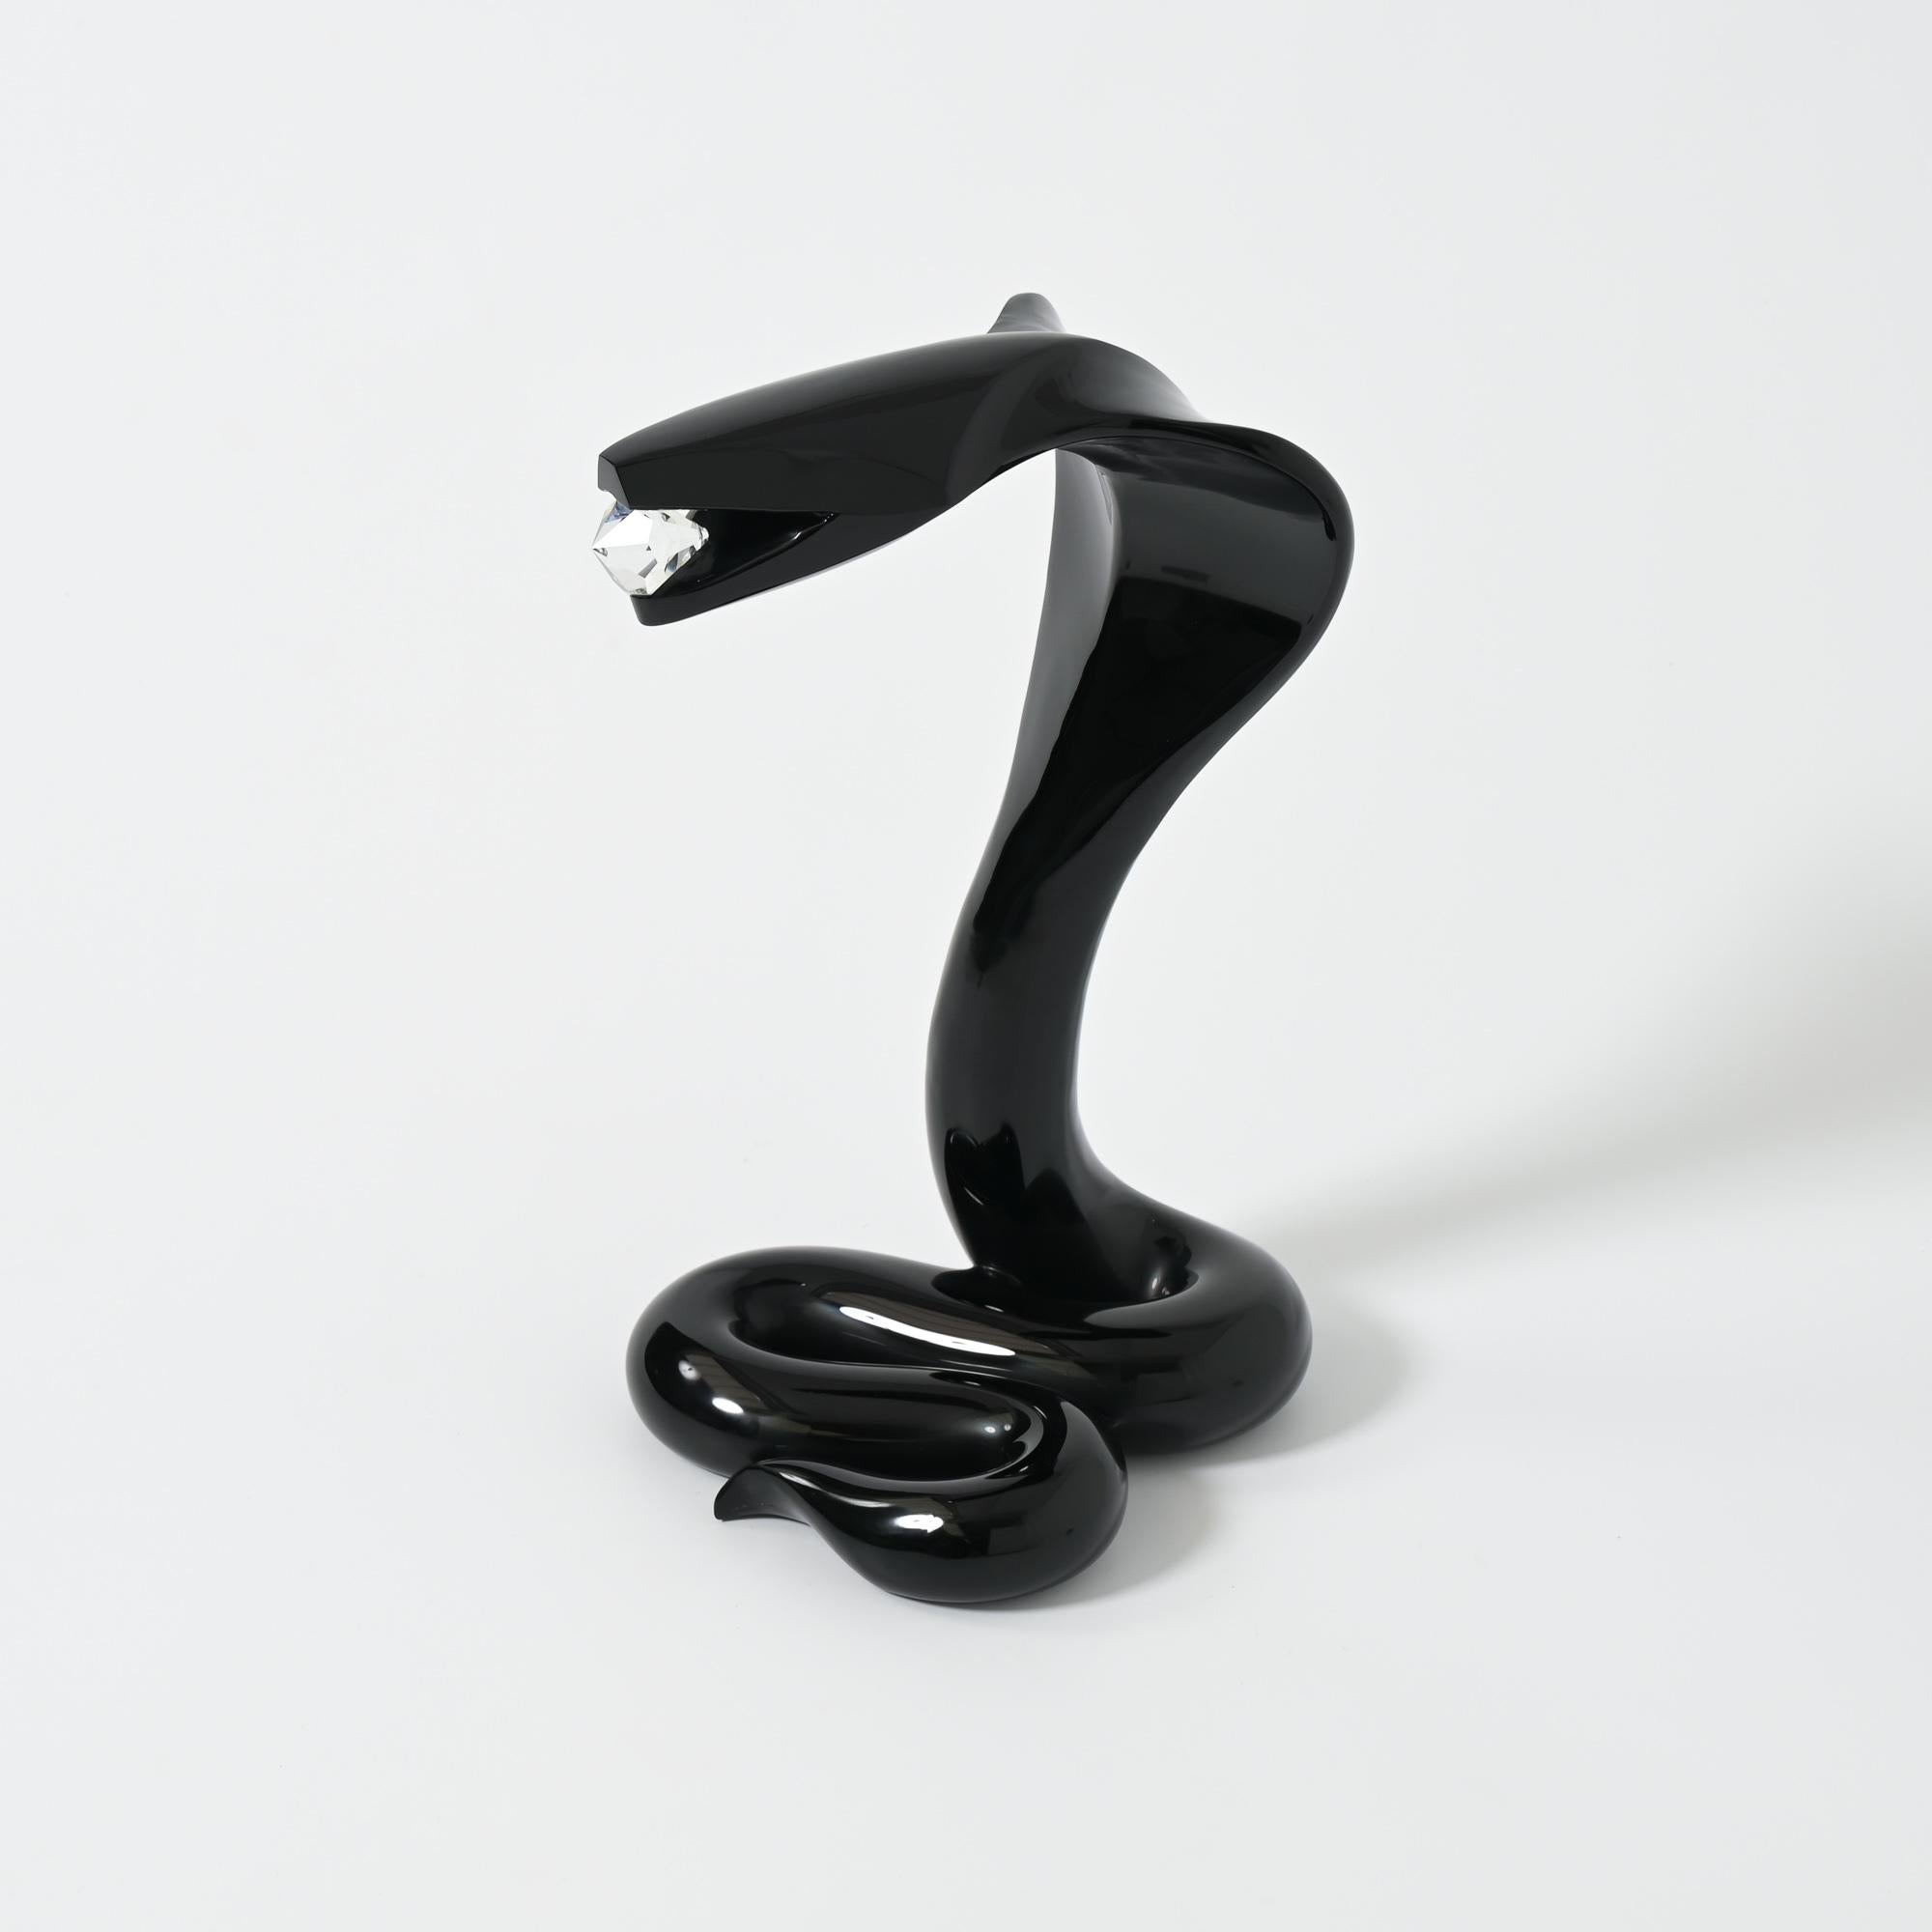 Diese Cobra-Skulptur wurde von dem berühmten italienischen Glaskünstler Loredano Rosin in den 1980er Jahren in seinem Atelier in Murano, Venedig, Italien, geschaffen und hergestellt.
Die schwarze Kobra aus Muranoglas hält einen klaren Diamanten aus